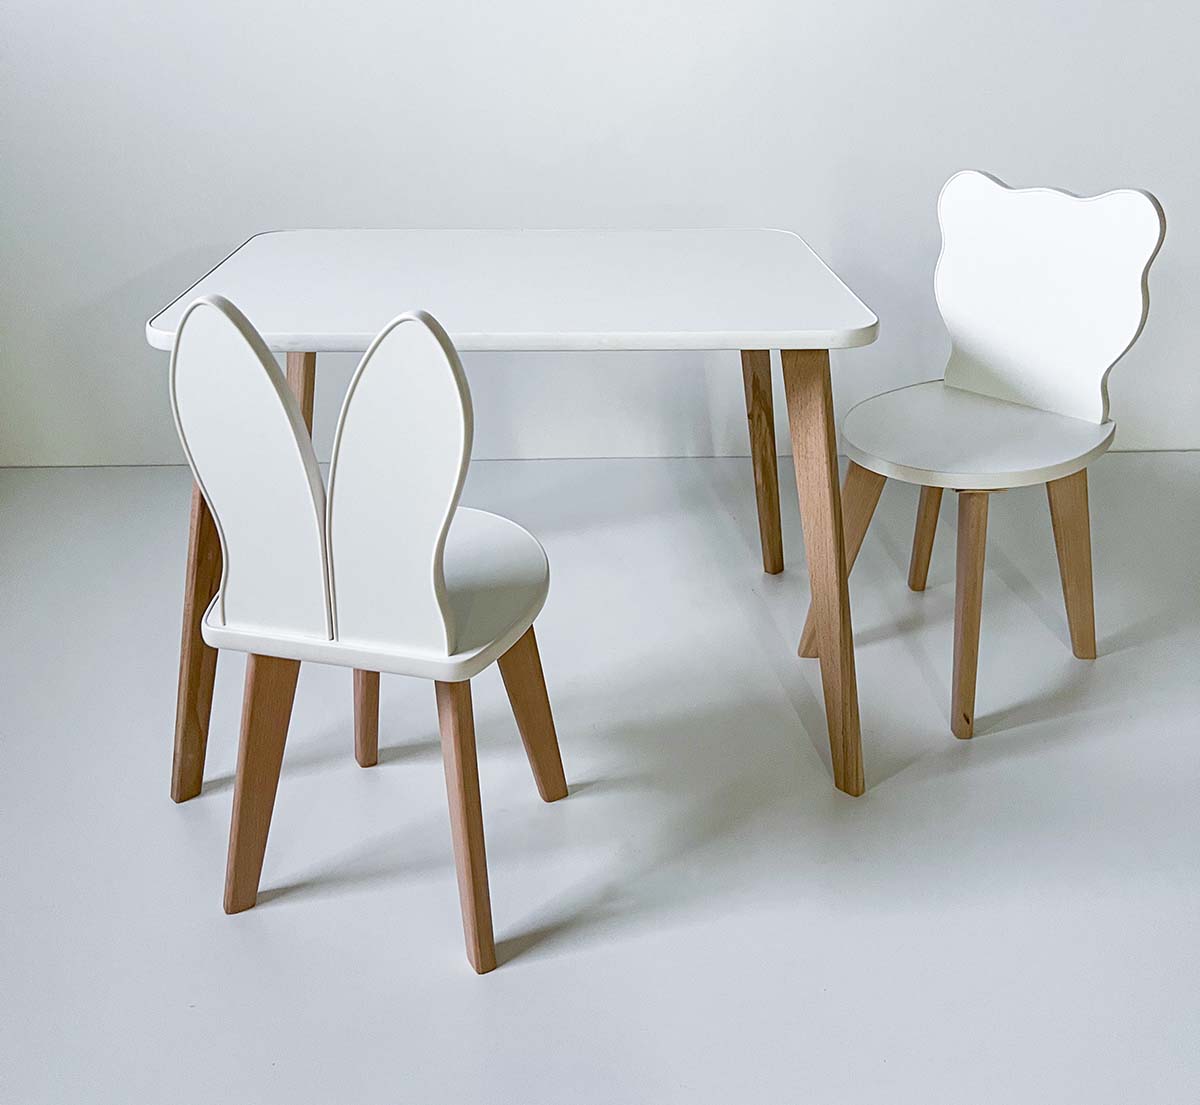 Комплект детской мебели RuLes стол прямоугольный детский и стульчики мишка и зайка 12643